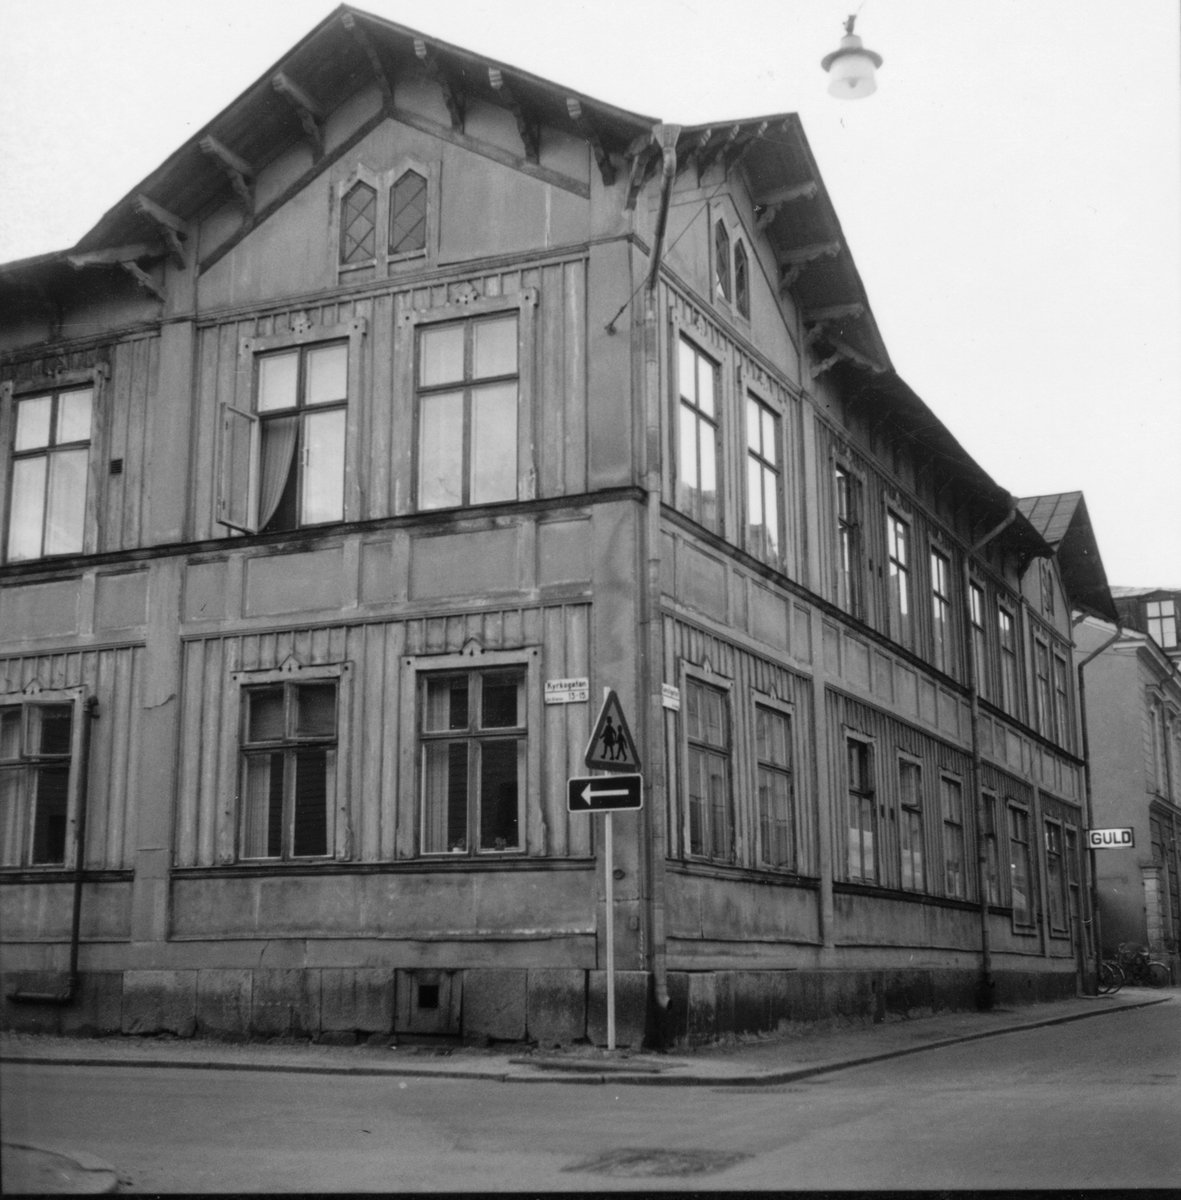 Kvarteret Nattväktaren, hörnet Kyrkogatan/ Norra Kansligatan.
Sistnämda gatudel är numera bebyggd: Tempo varuhus.